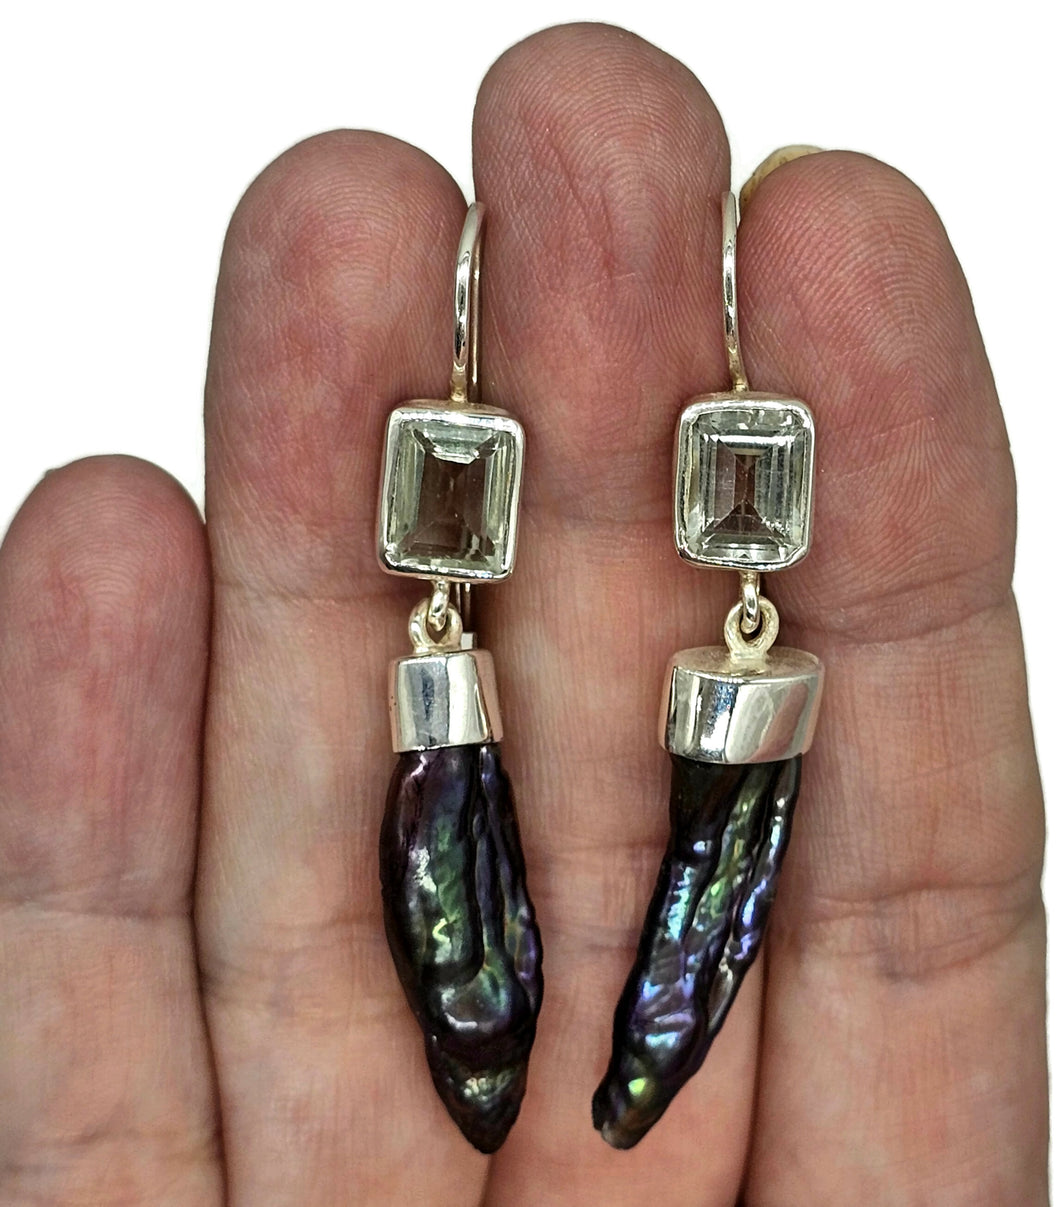 Prasiolite & Black Pearl Earrings, Sterling Silver, August and June Birthstones - GemzAustralia 